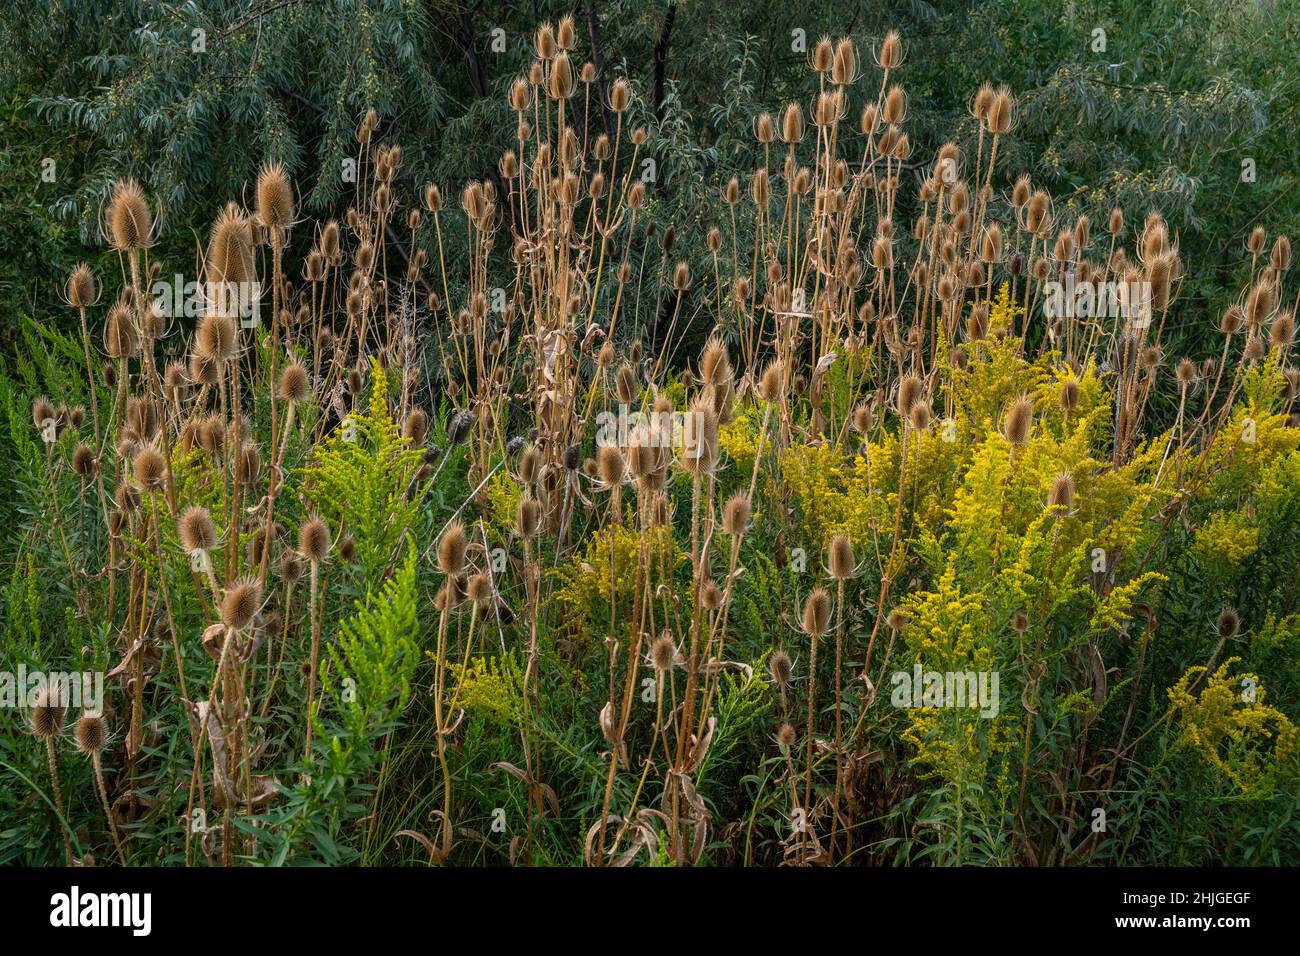 Cucharadita común (Dipsacus fullonum) con vara de oro (Solidago canadensis) y olivo ruso (Elaeagnus angustifolia) en el Parque Marianne Williams de Boise Foto de stock